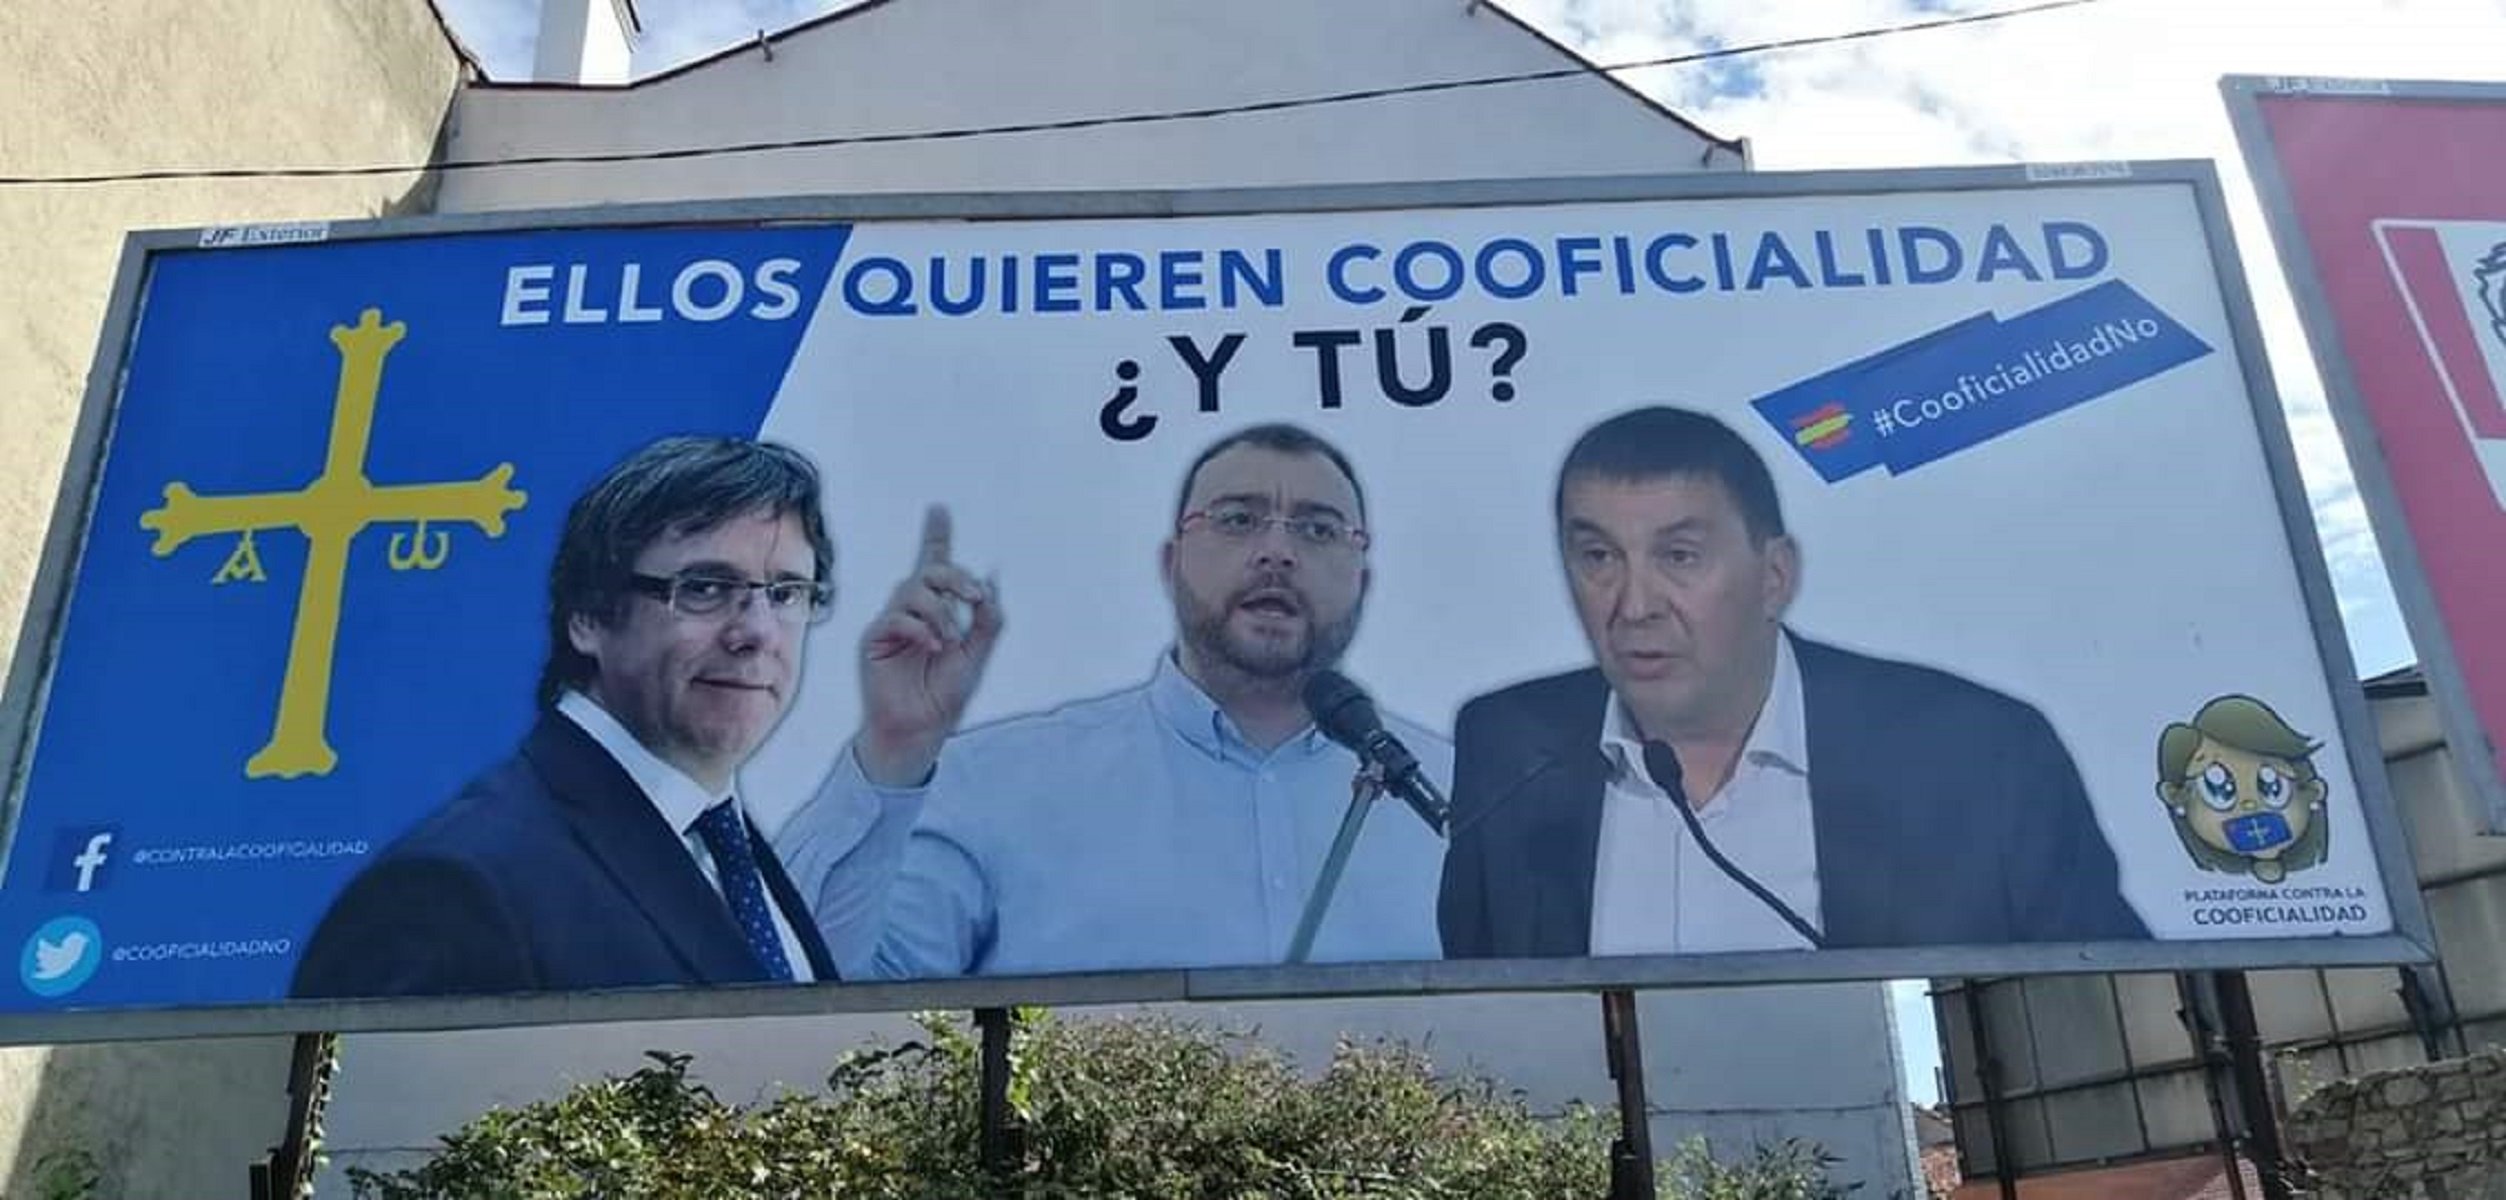 Utilizan la imagen de Puigdemont contra el reconocimiento del asturiano